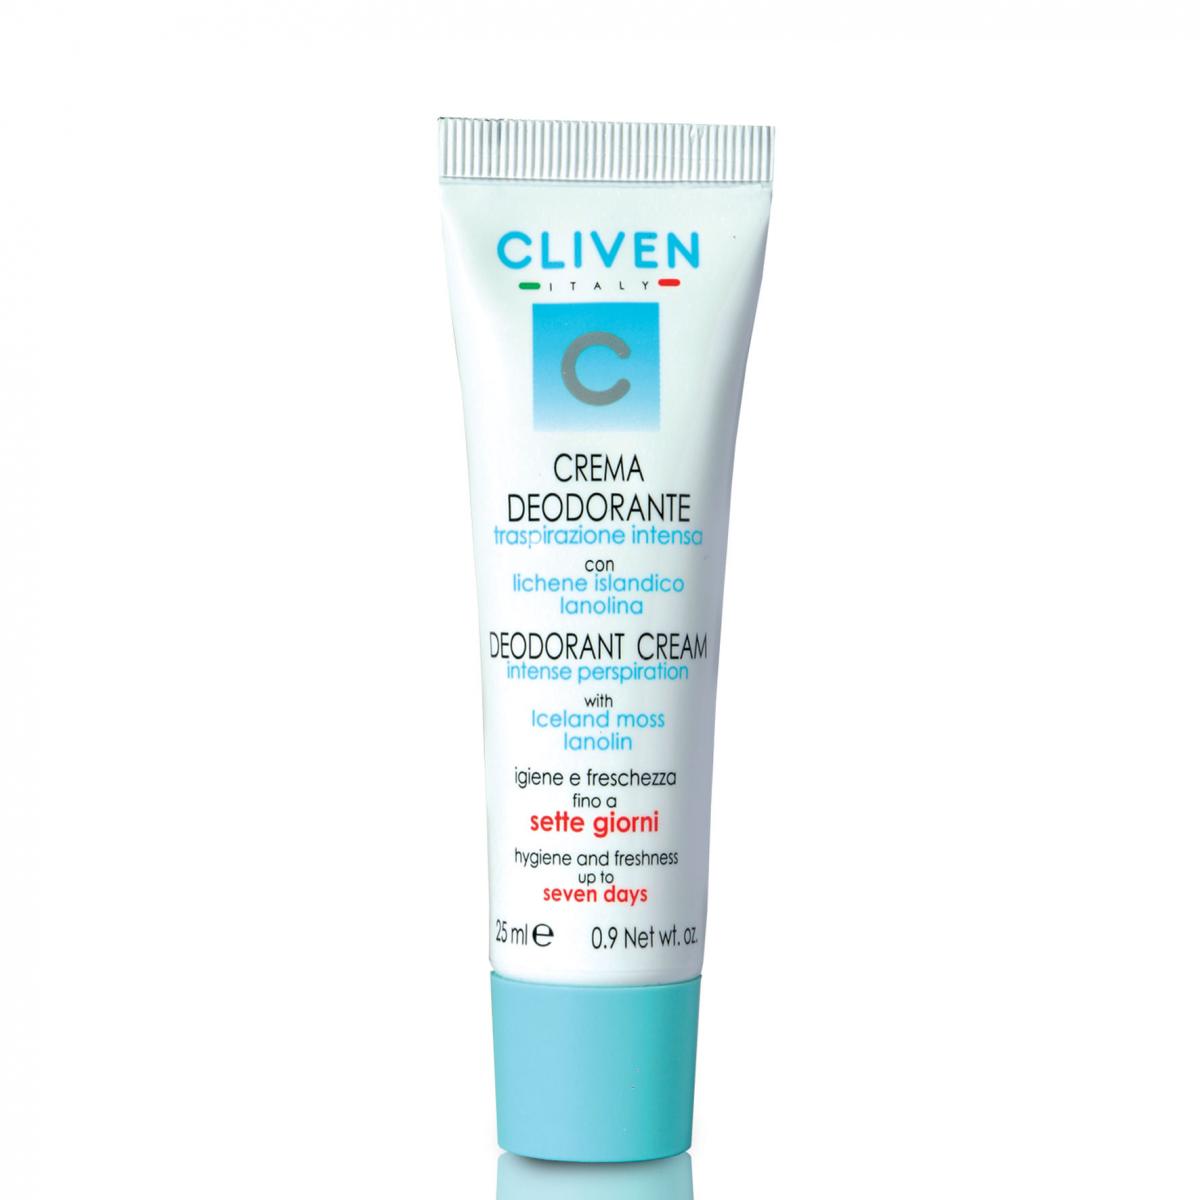 کرم دئودورانت هفته - Cliven Deodorant Cream 7 Days